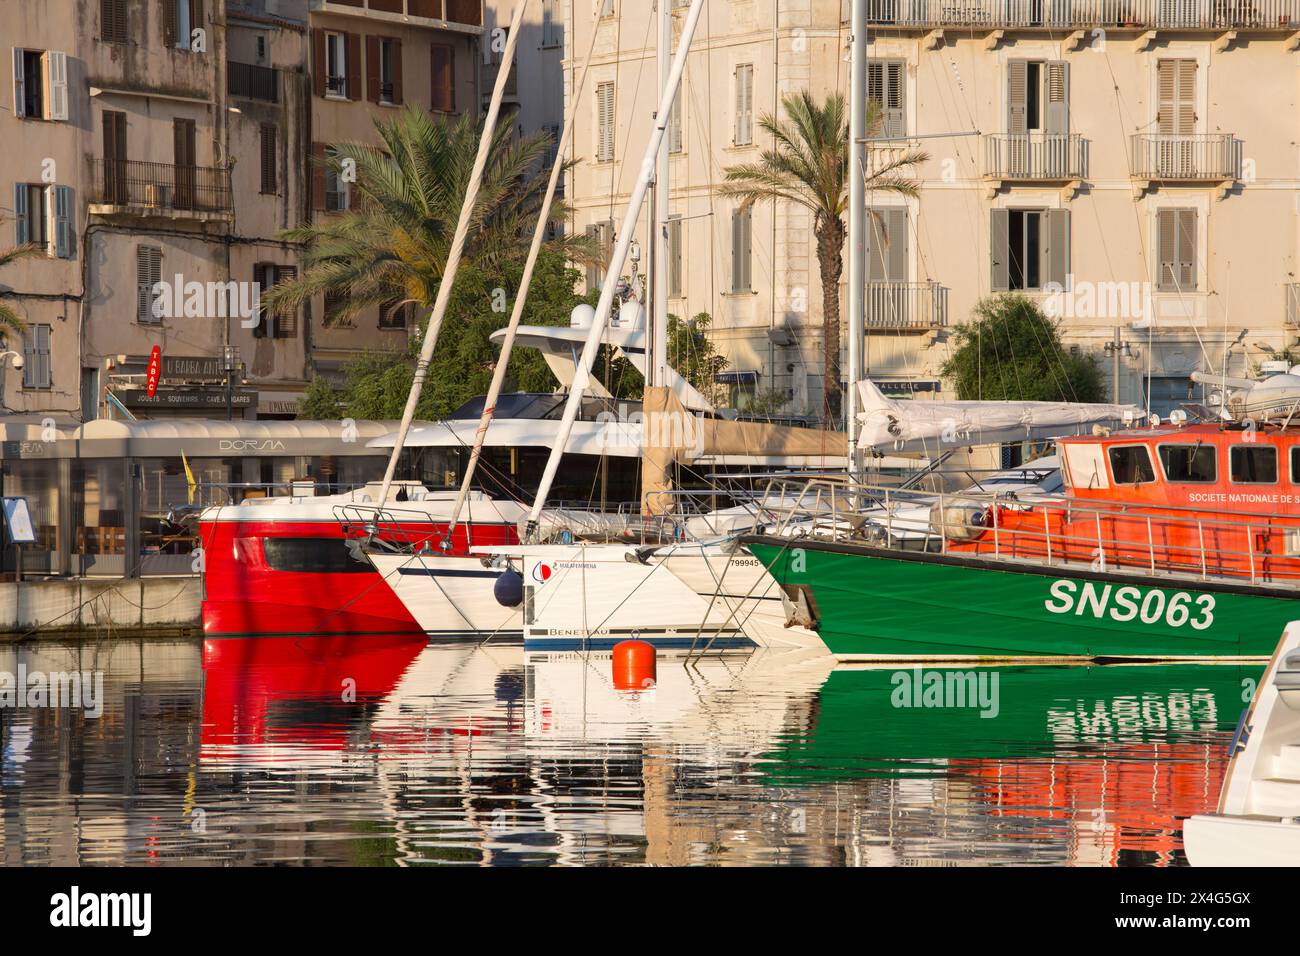 Bonifacio, Corse-du-Sud, Korsika, Frankreich. Blick über den Hafen bei Sonnenaufgang, farbenfrohe, verankerte Boote spiegeln sich im ruhigen Wasser. Stockfoto